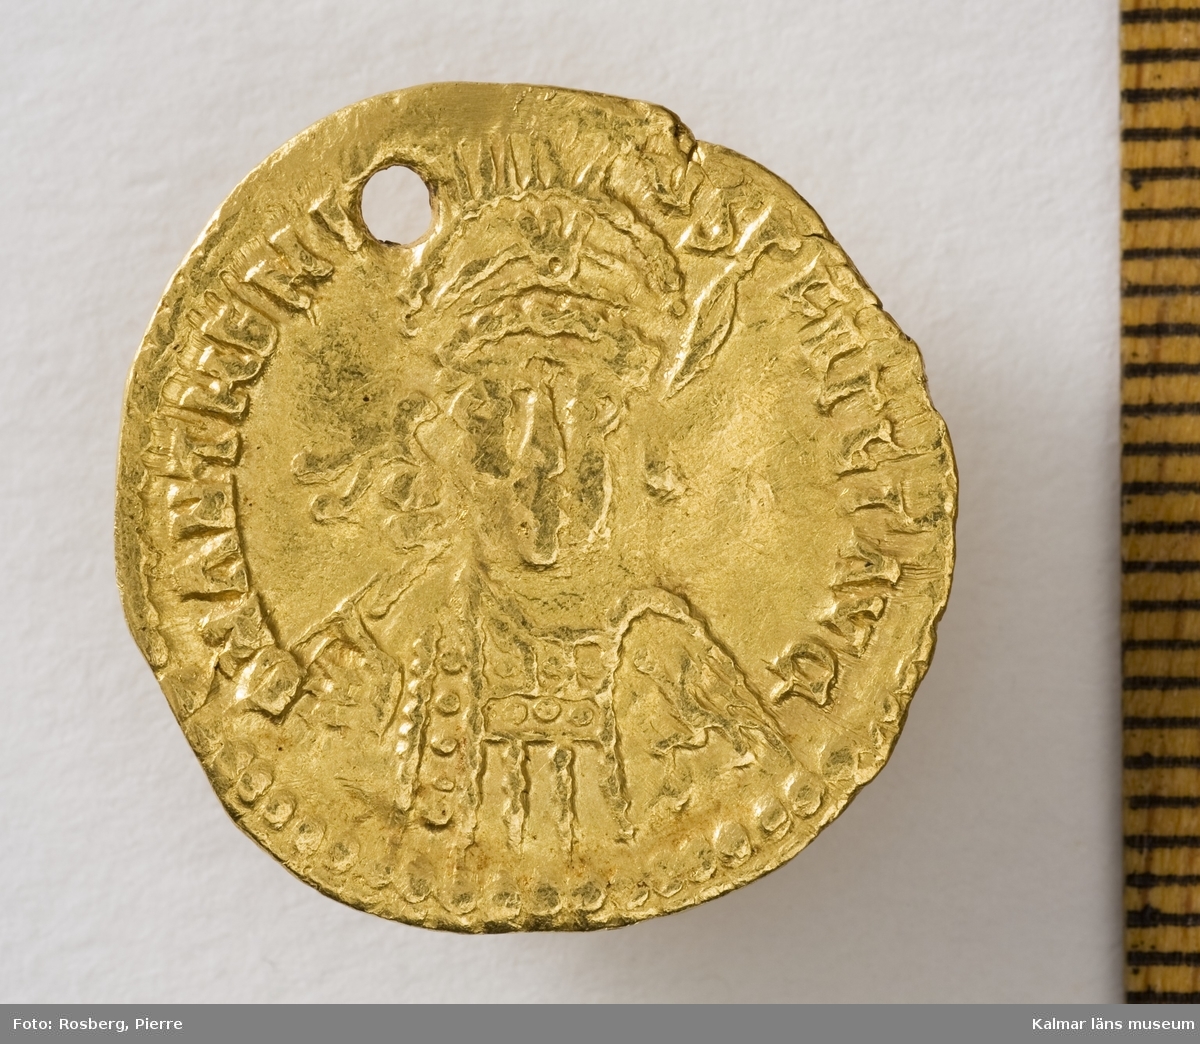 KLM 23575:9  Mynt, solidus, guld. Präglad för Anthemis (467-472 e. Kr.) Bestämning: F 150, RICX2891.